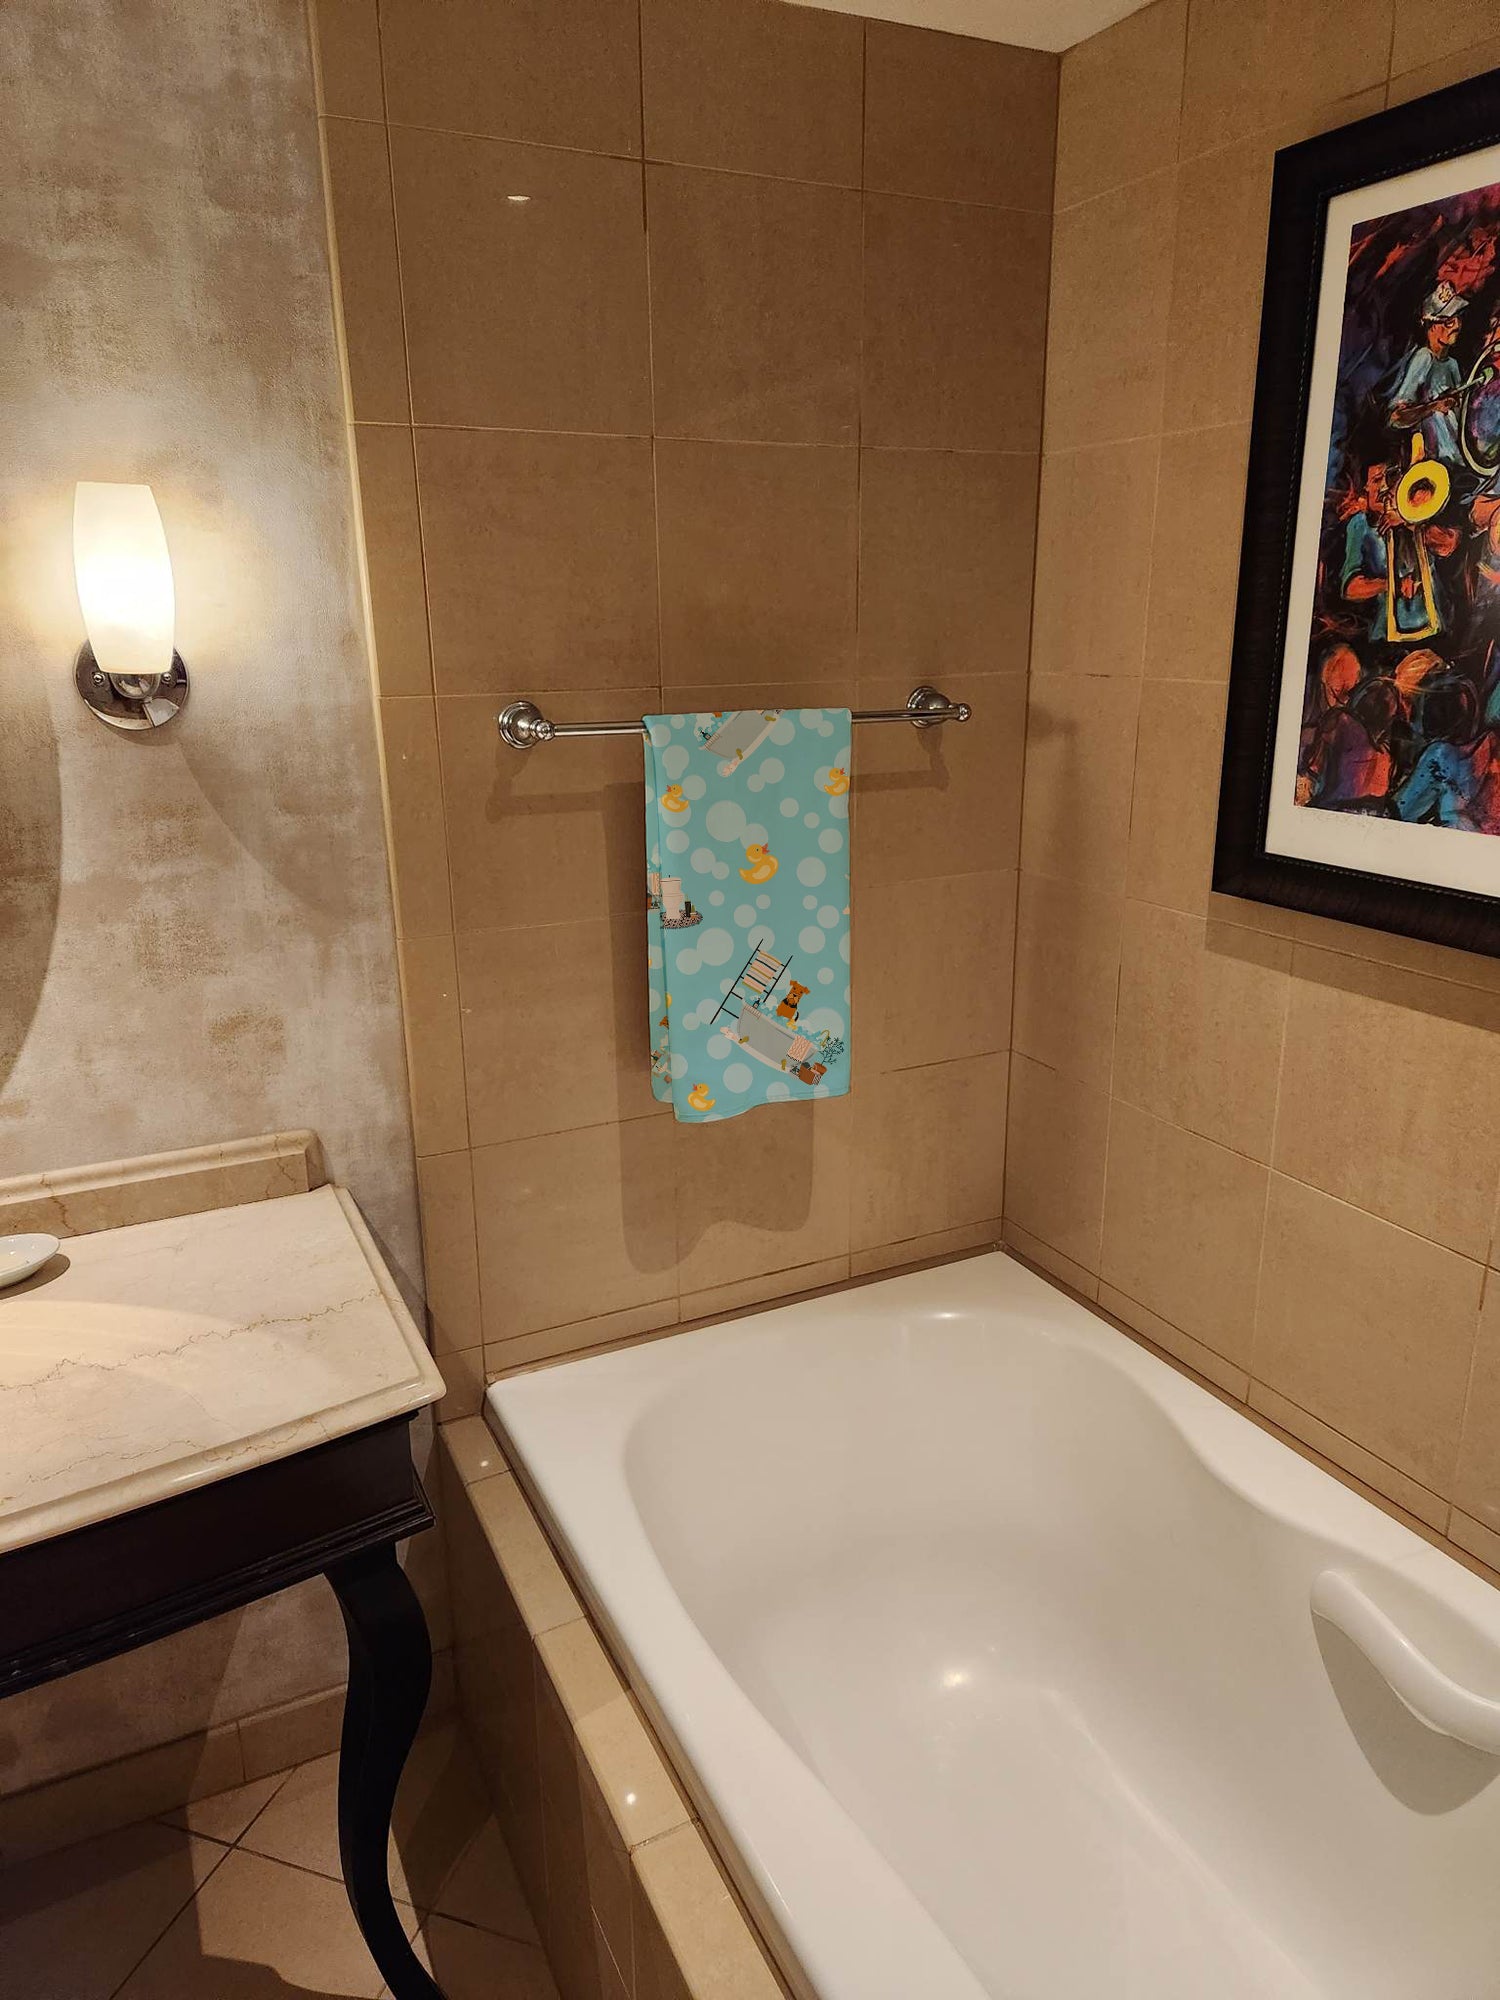 Airedale in Bathtub Bath Towel Large